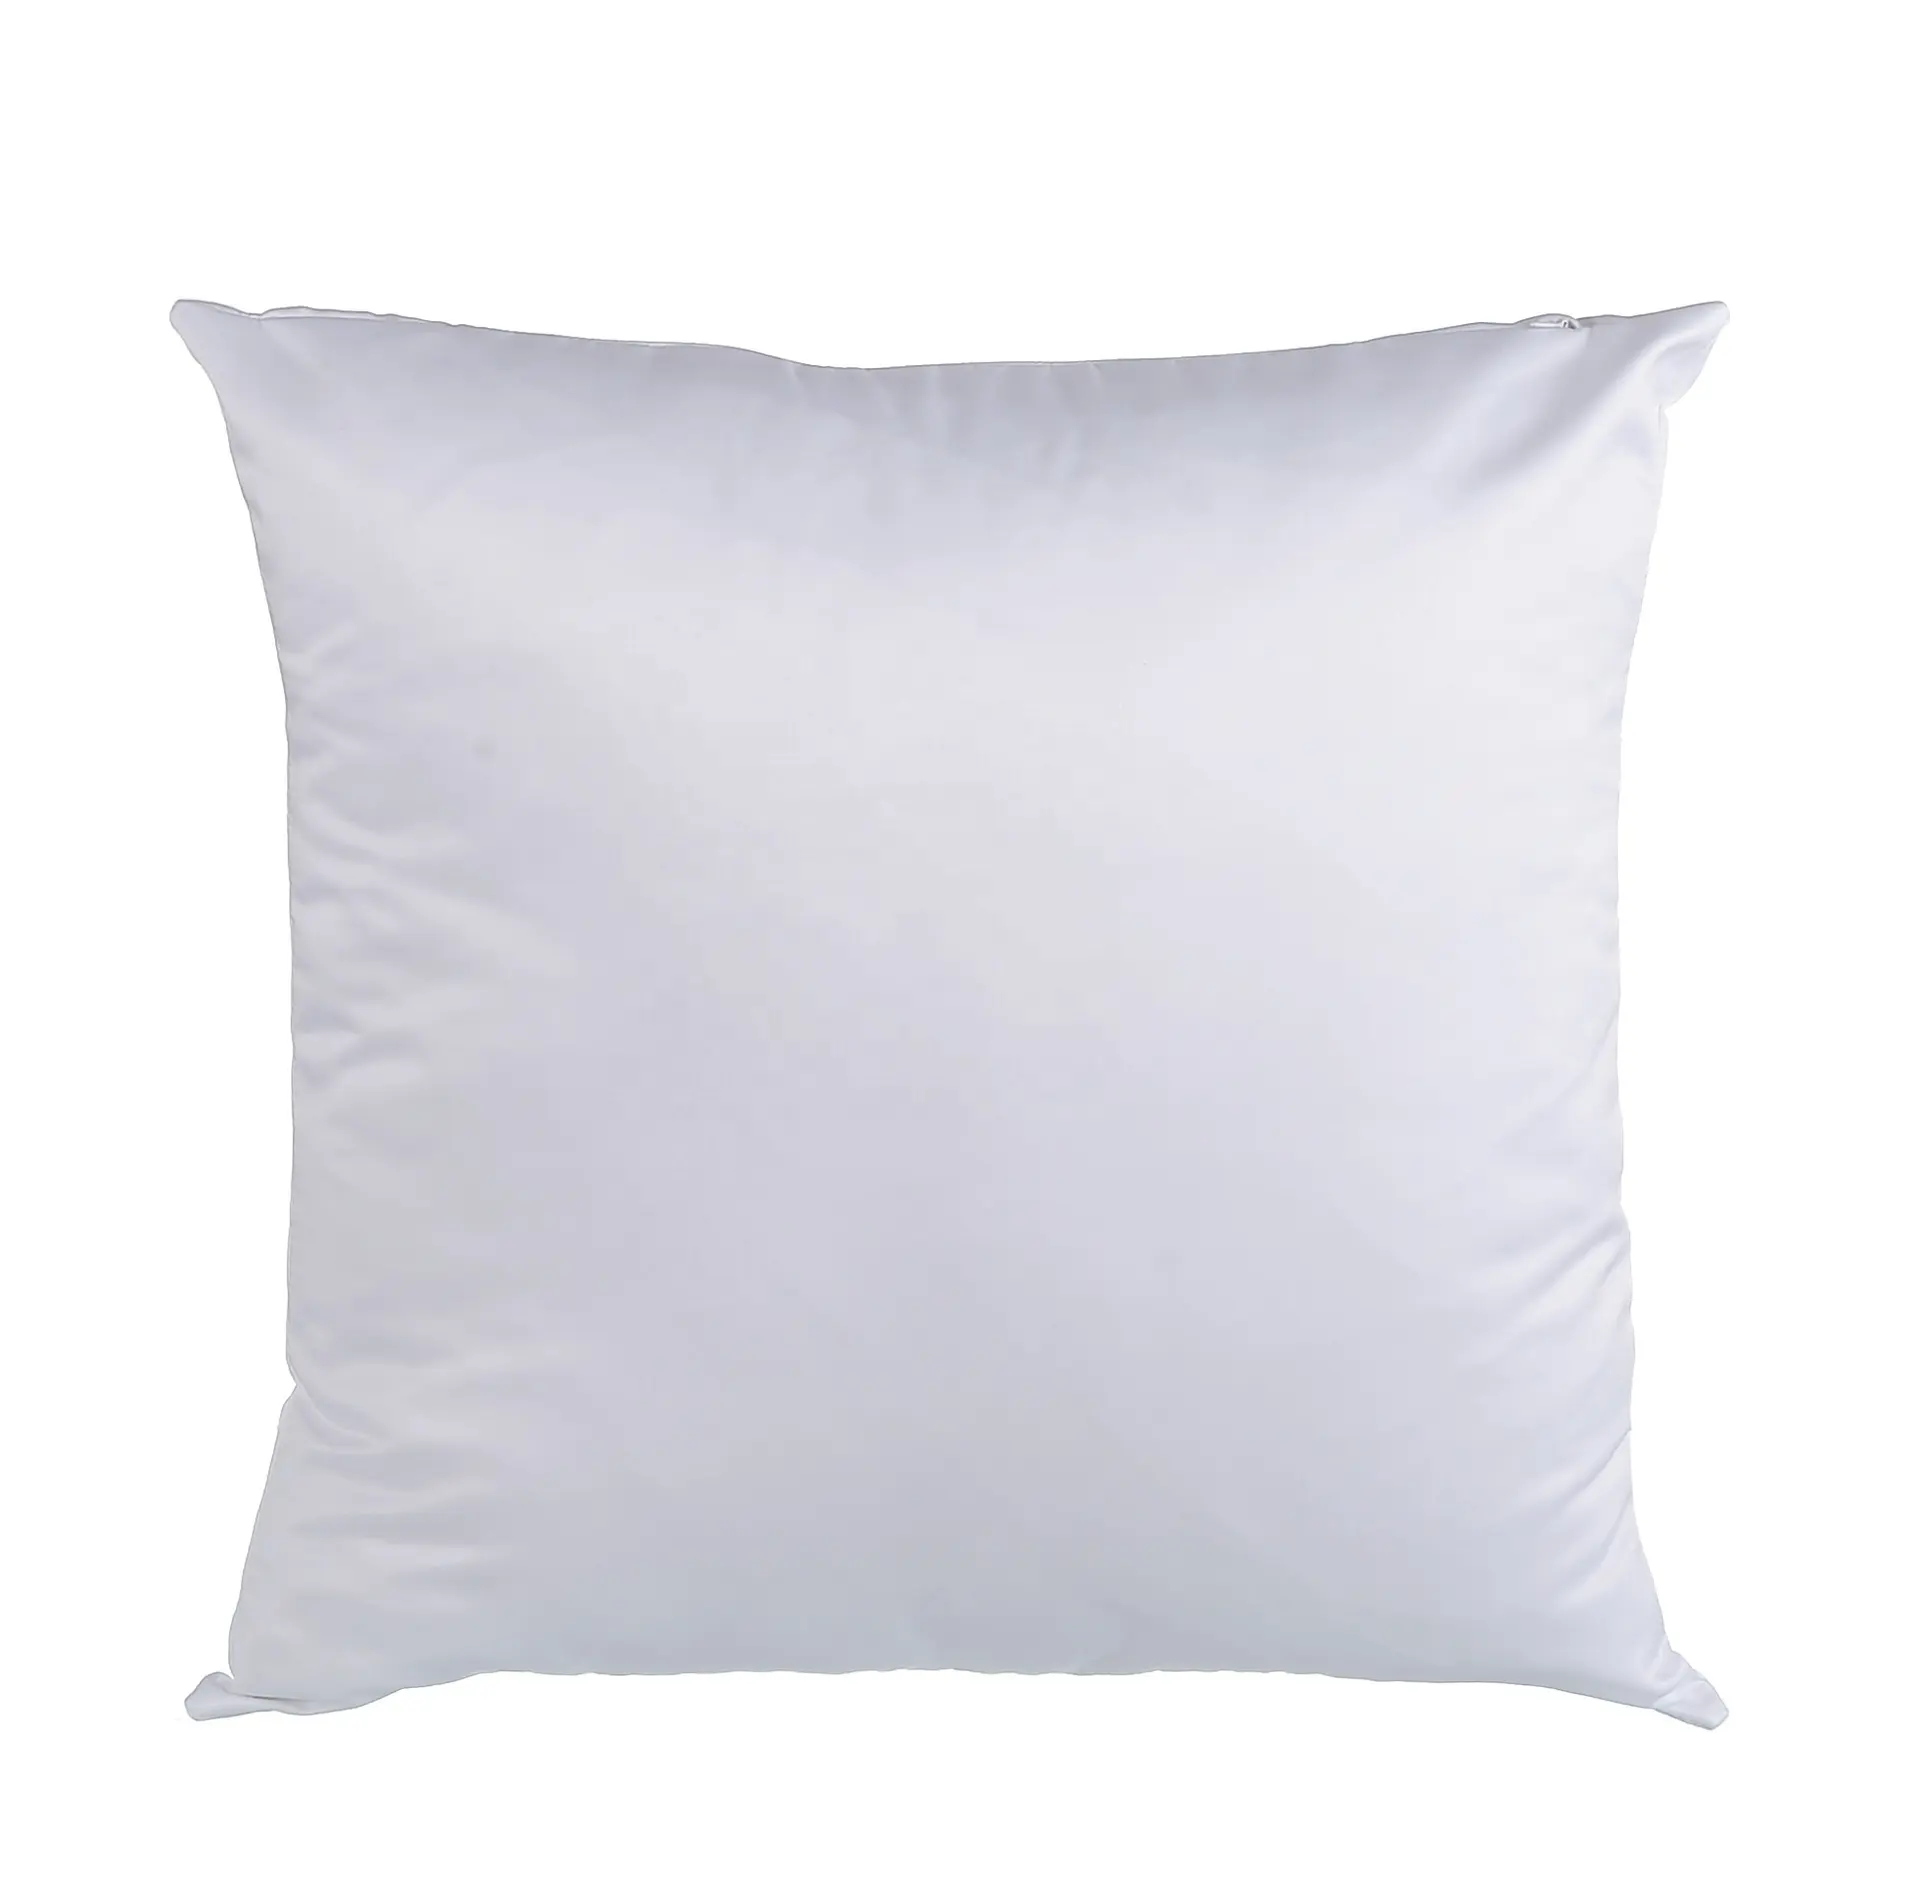 Rubysub che vende cuscini stampati a sublimazione personalizzati da 40cm federe per cuscini in raso bianco completo